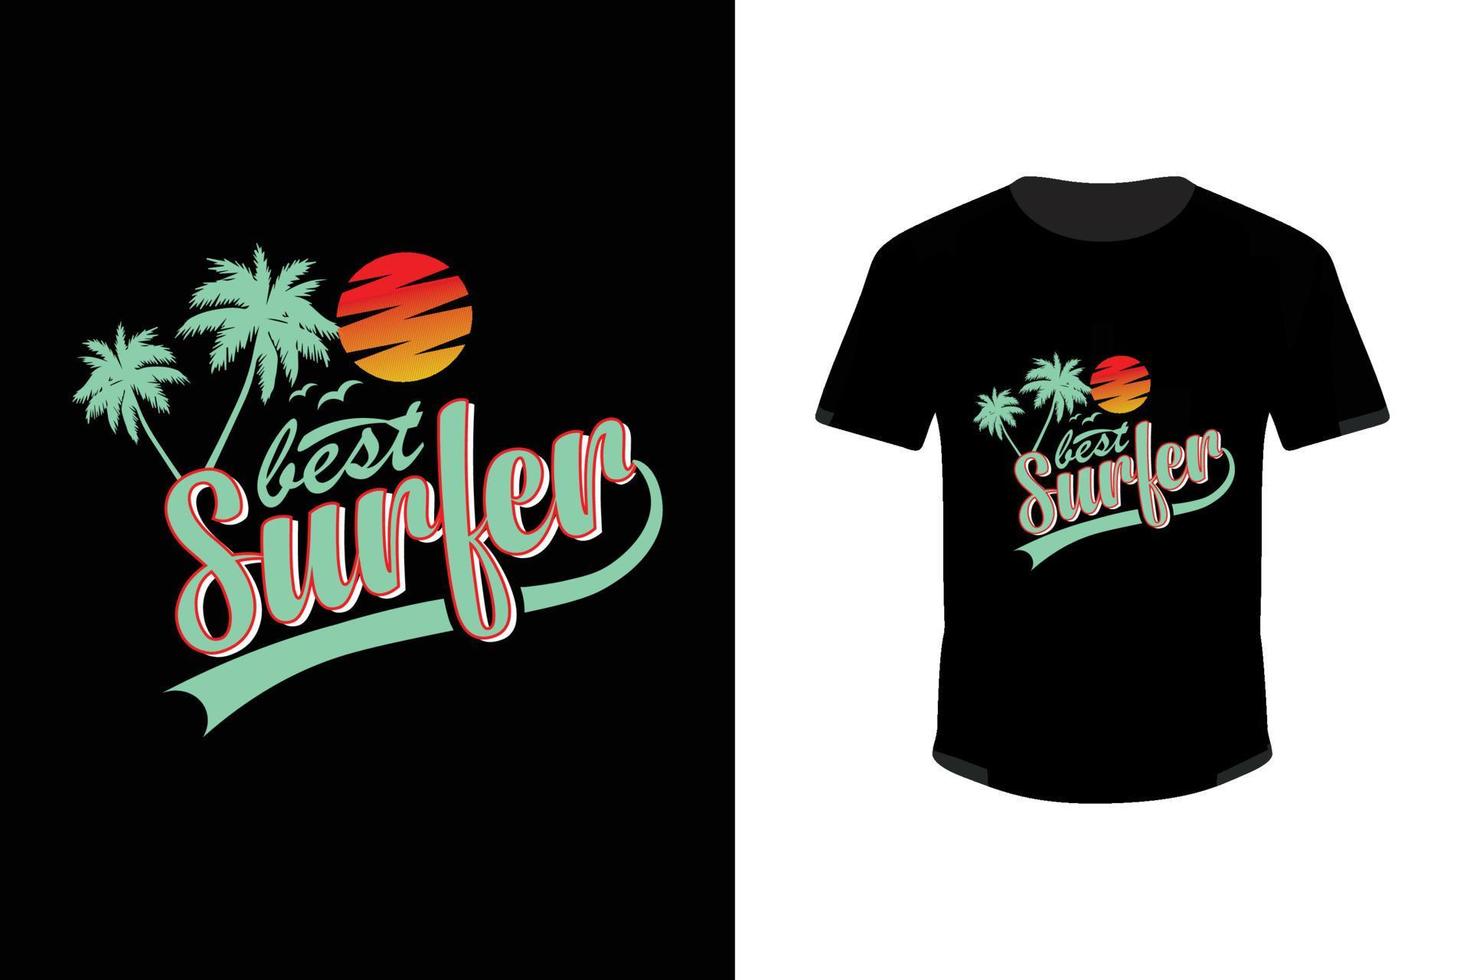 Best Surfer T-shirt design. Summer trendy surfer t-shirt design Free vector Template